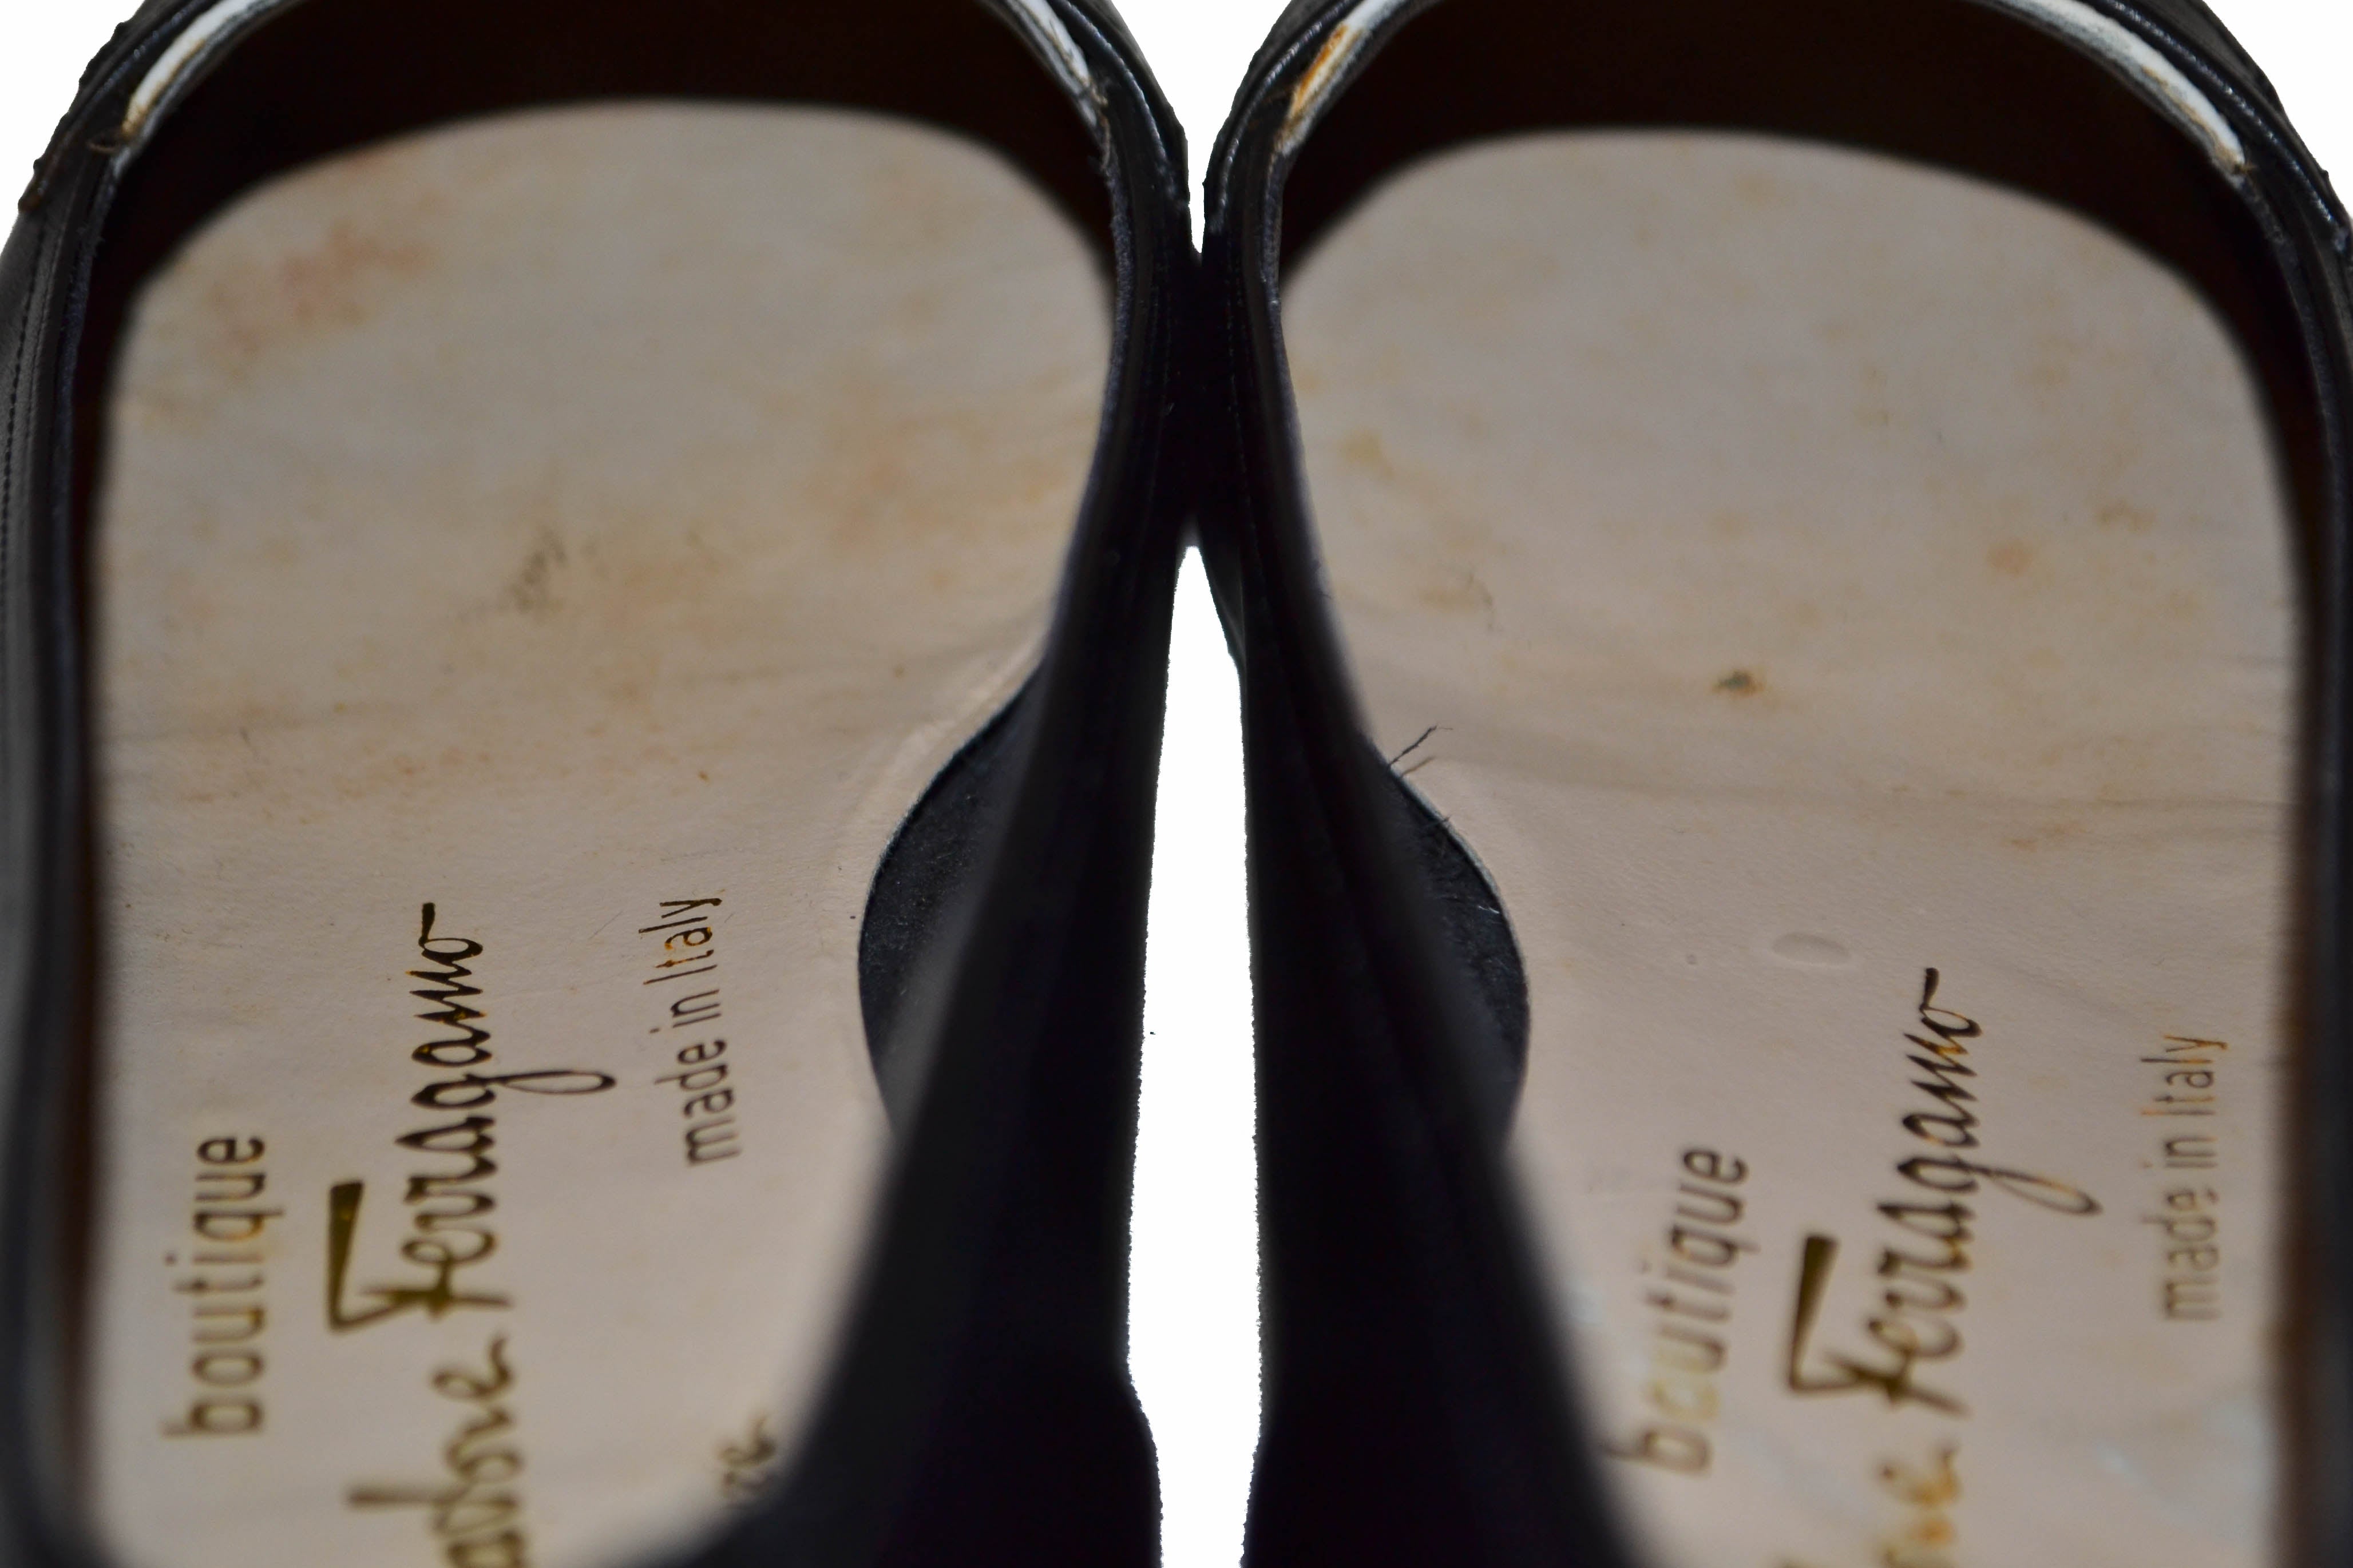 Authentic Salvatore Ferragamo Black/White Kiltie Tassel Loafer Size 6 B